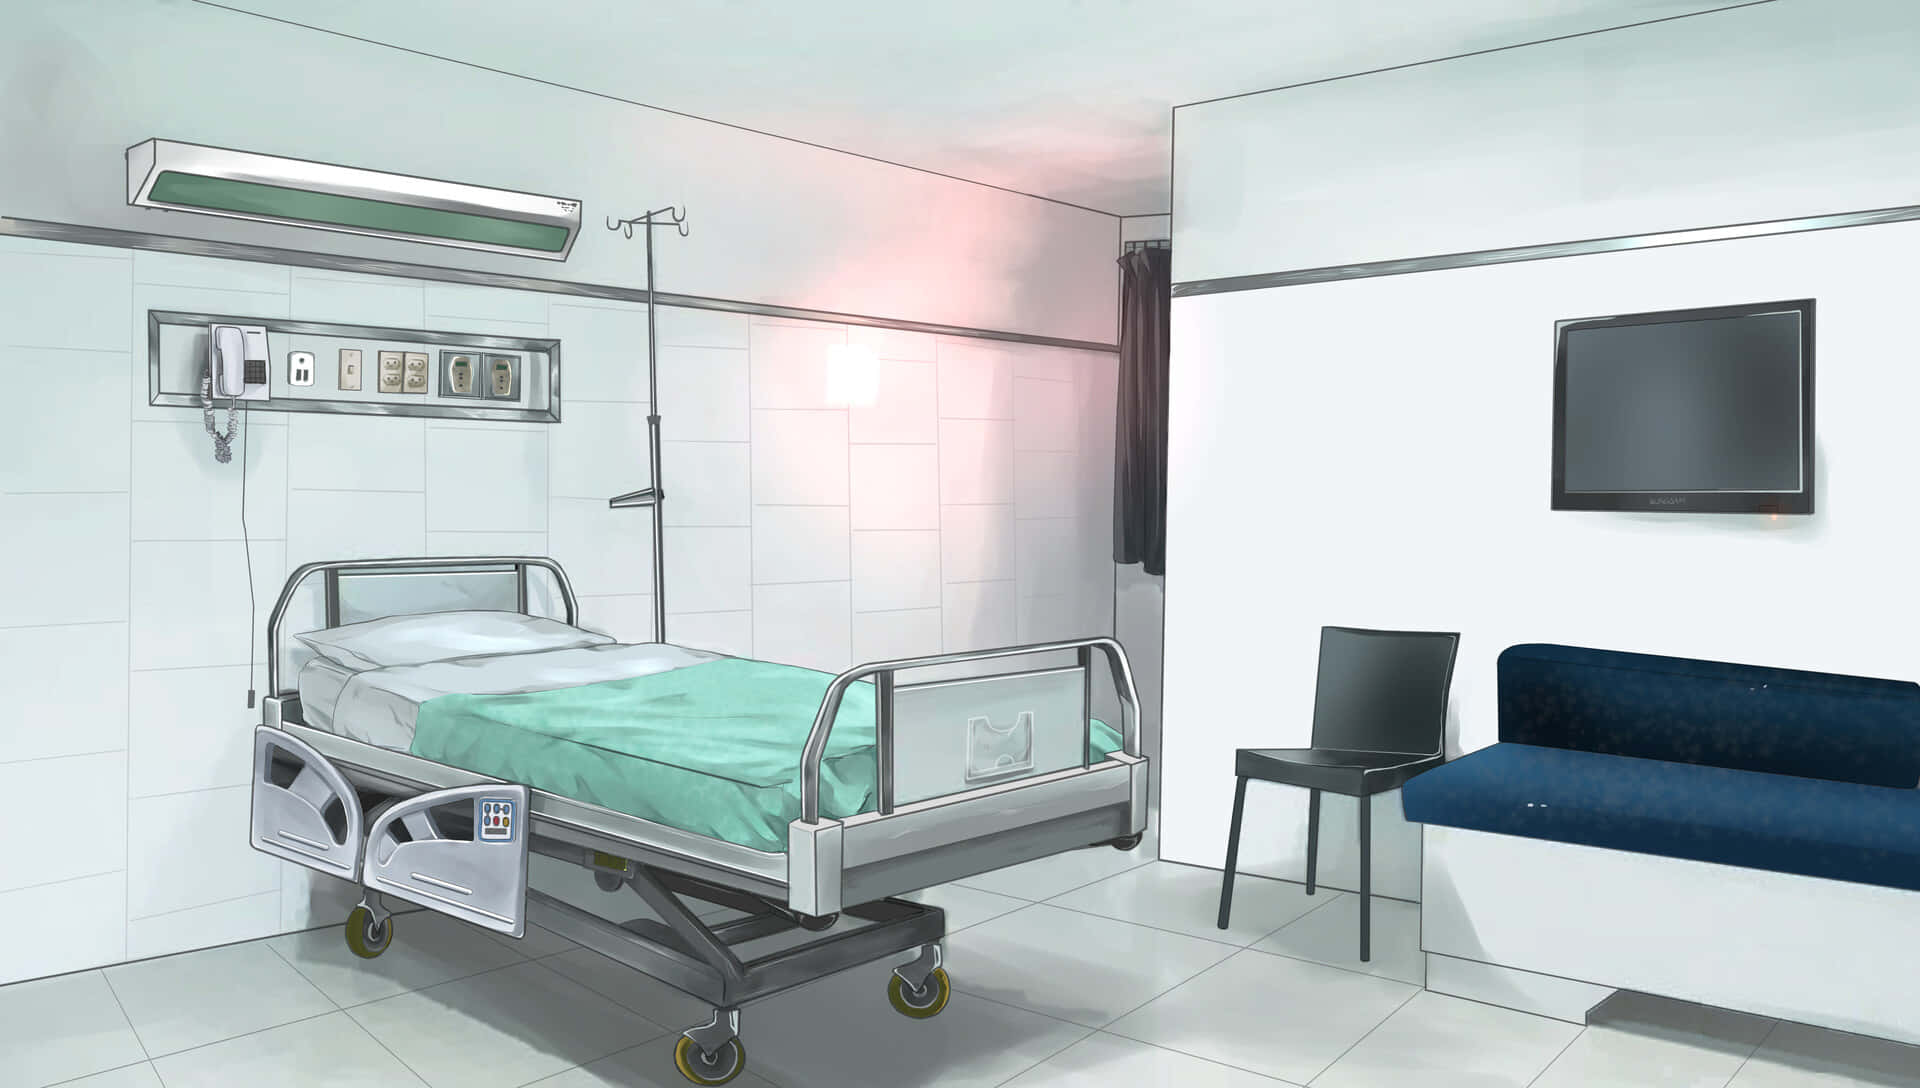 Comodidady Cuidado Del Paciente En Una Habitación Moderna De Hospital.